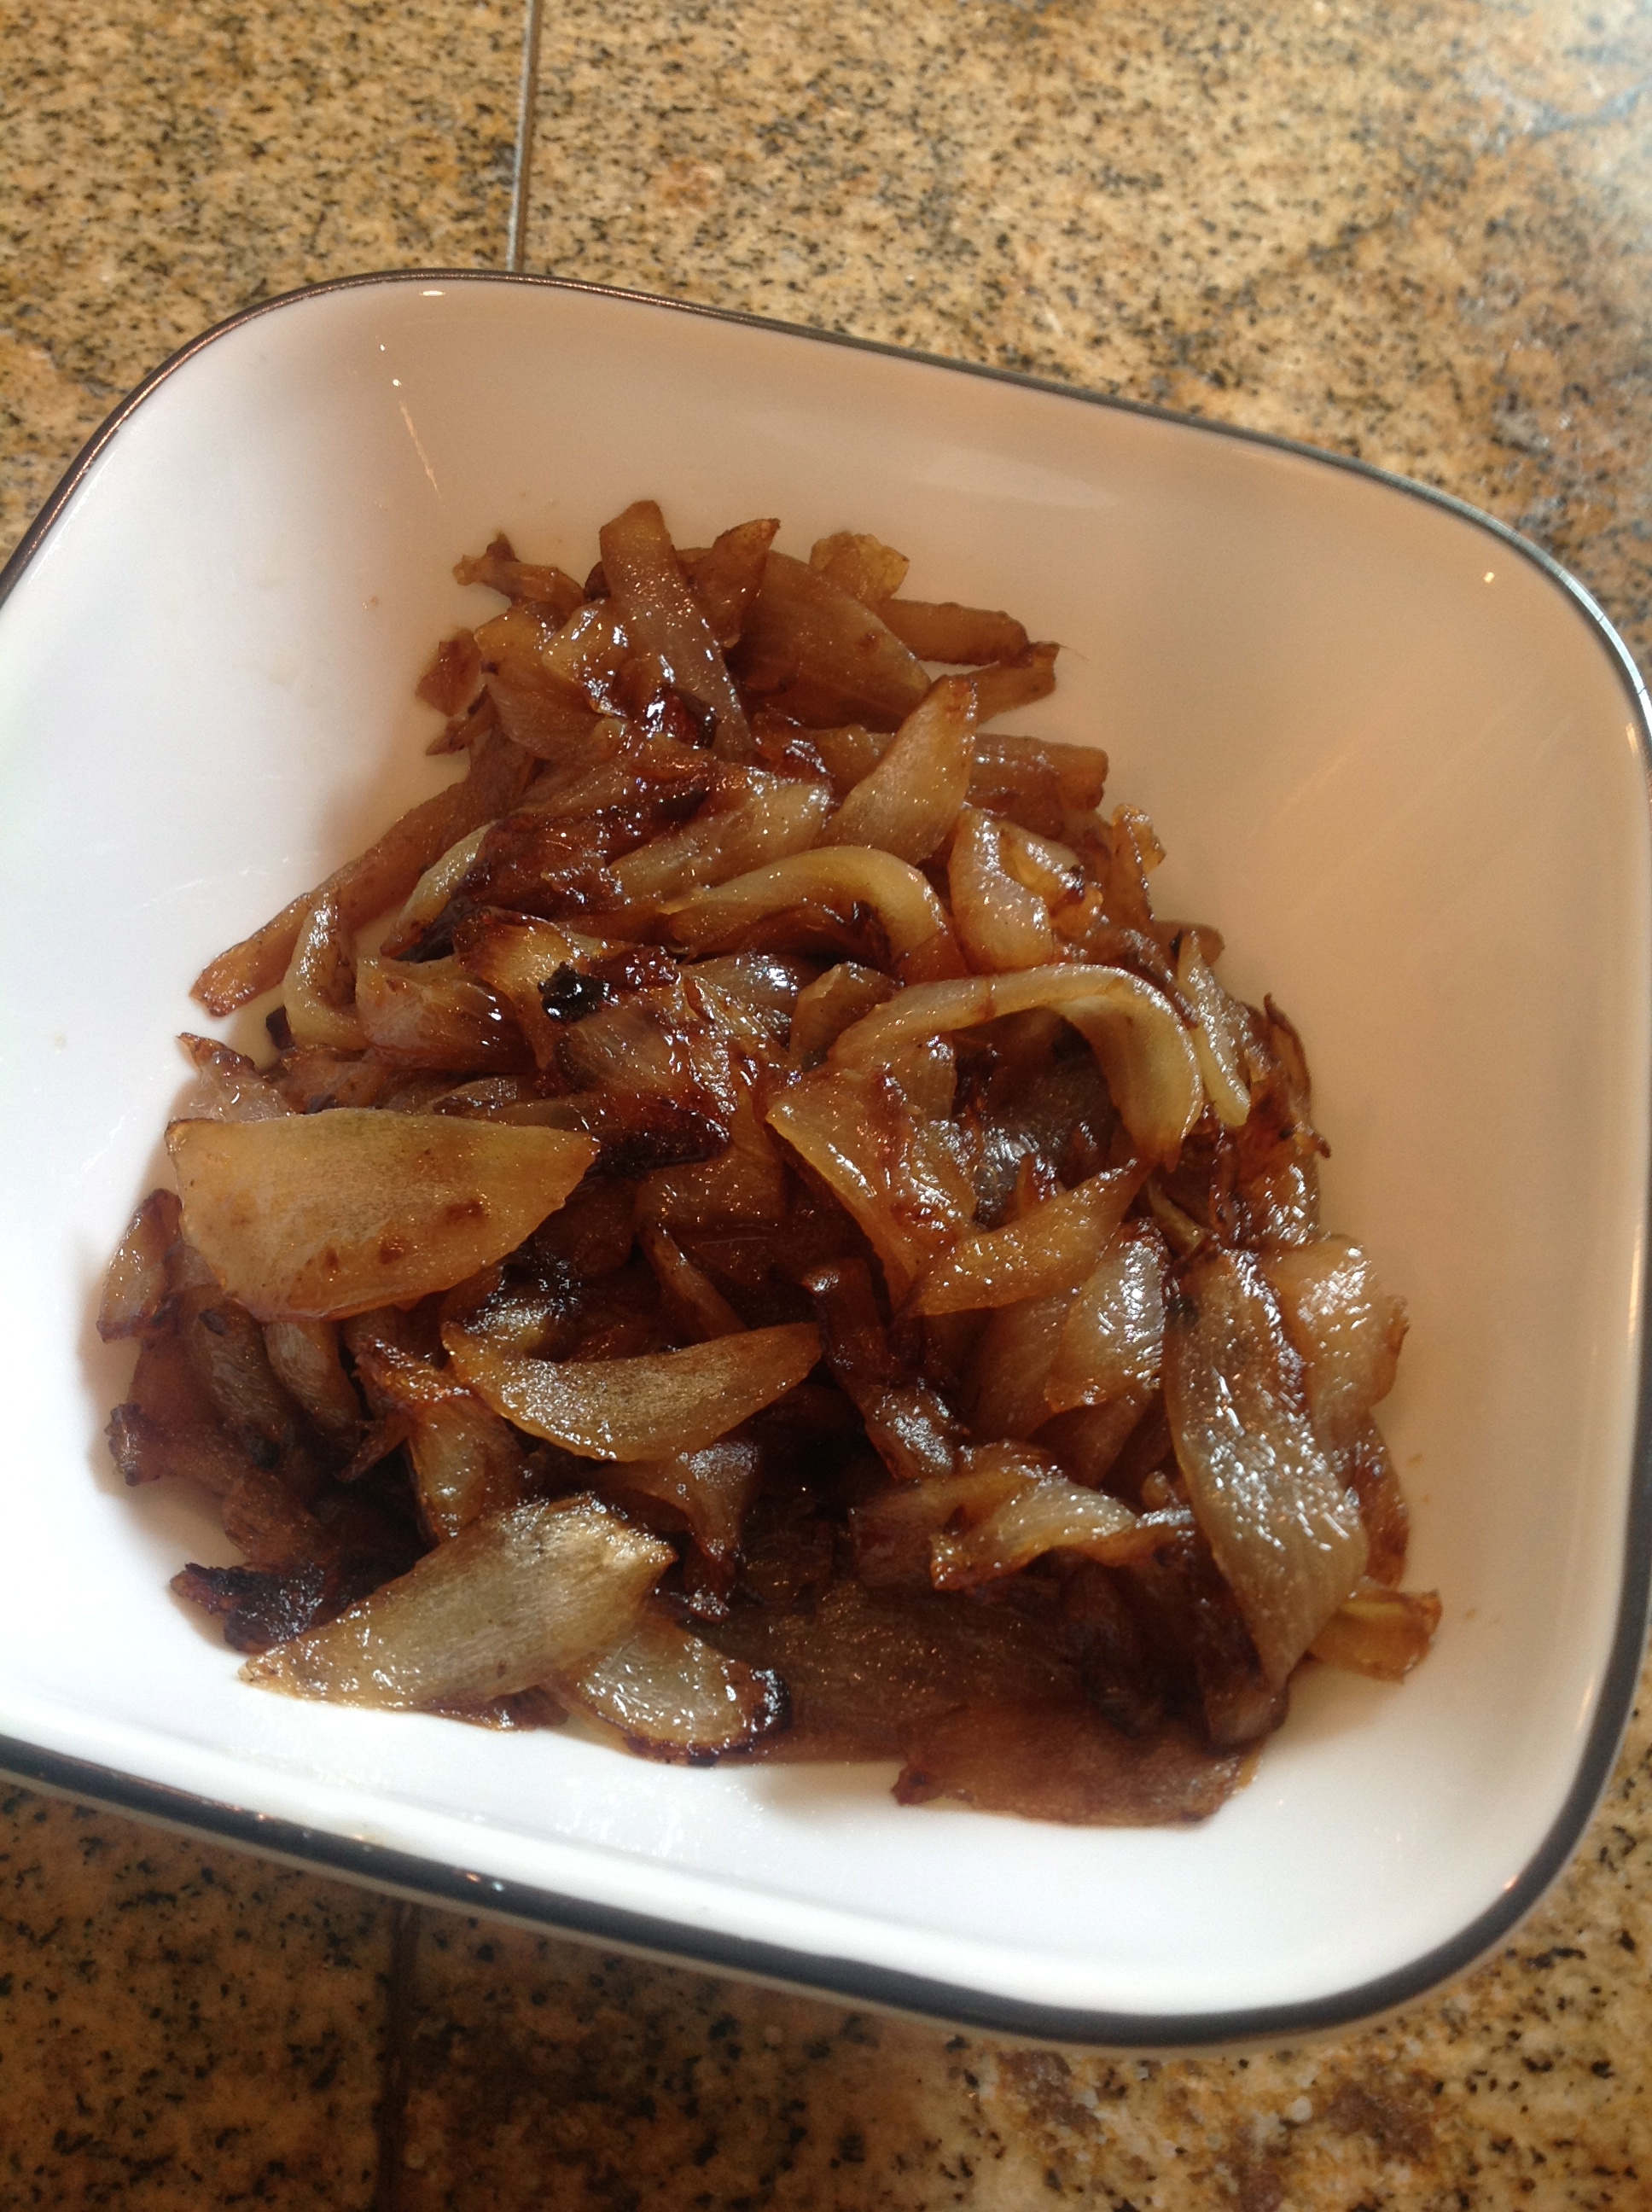 I made caramelized onions